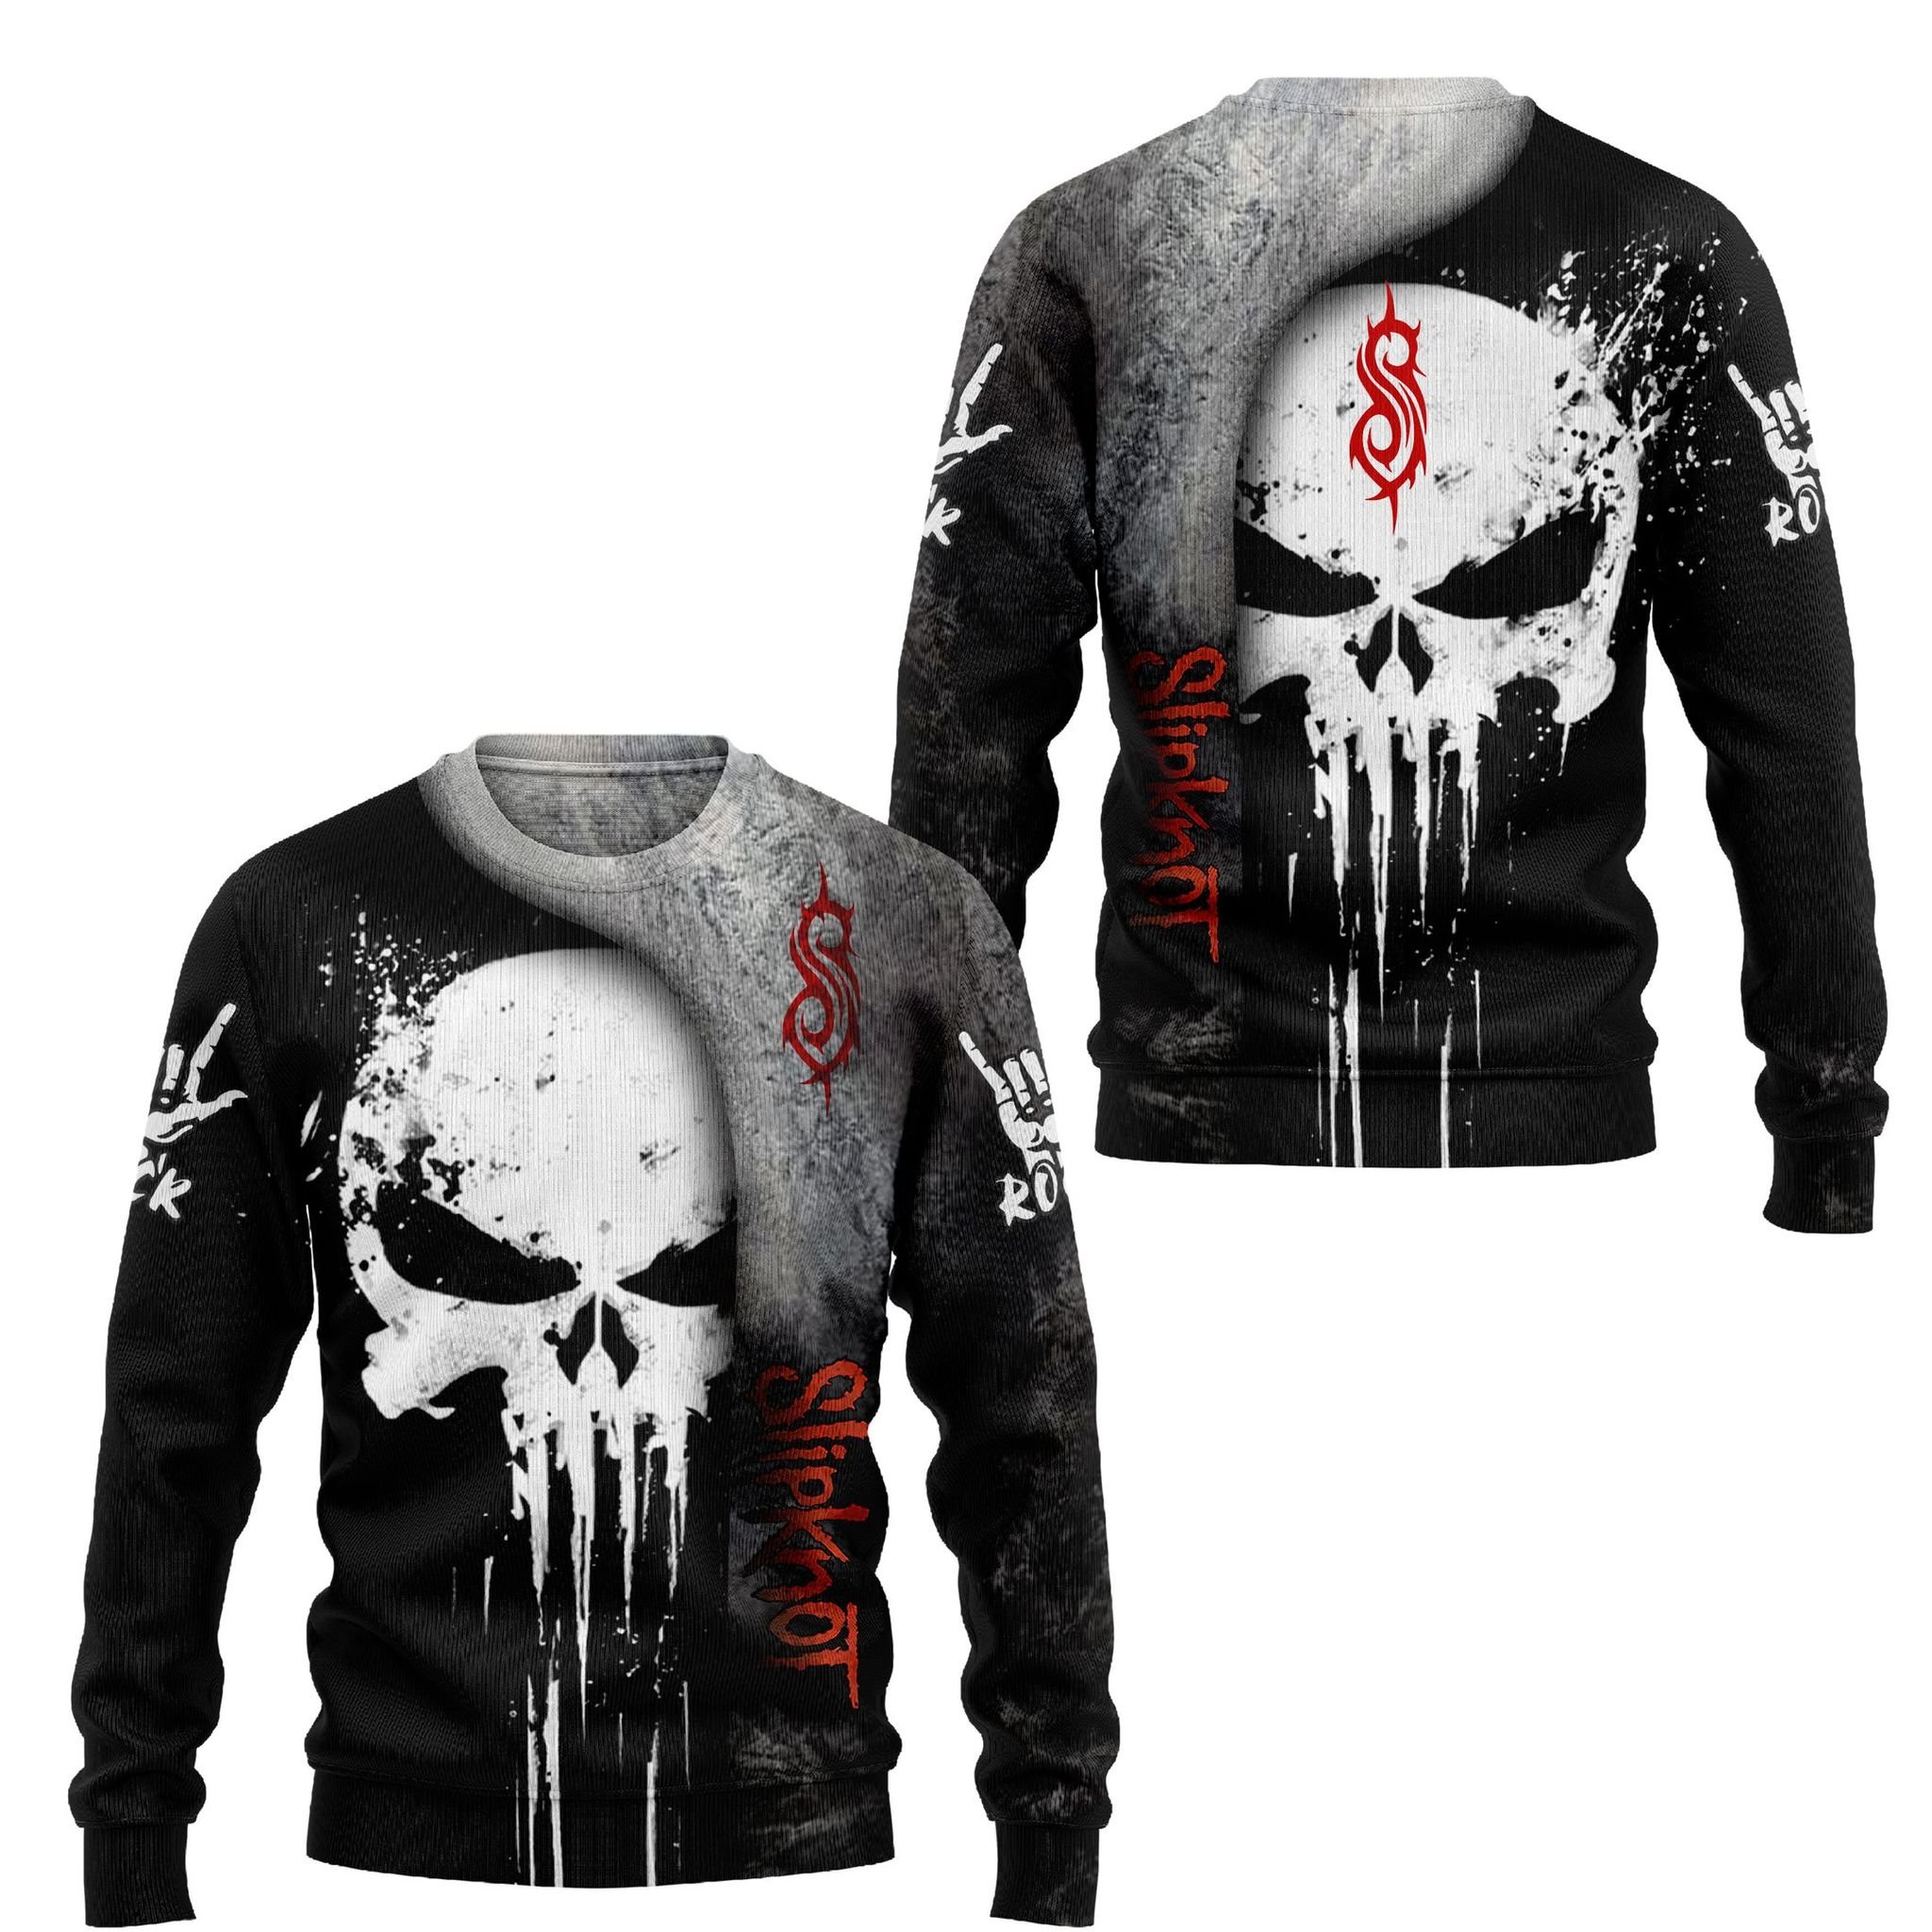 Slipknot skull 3d hoodie and shirt 1